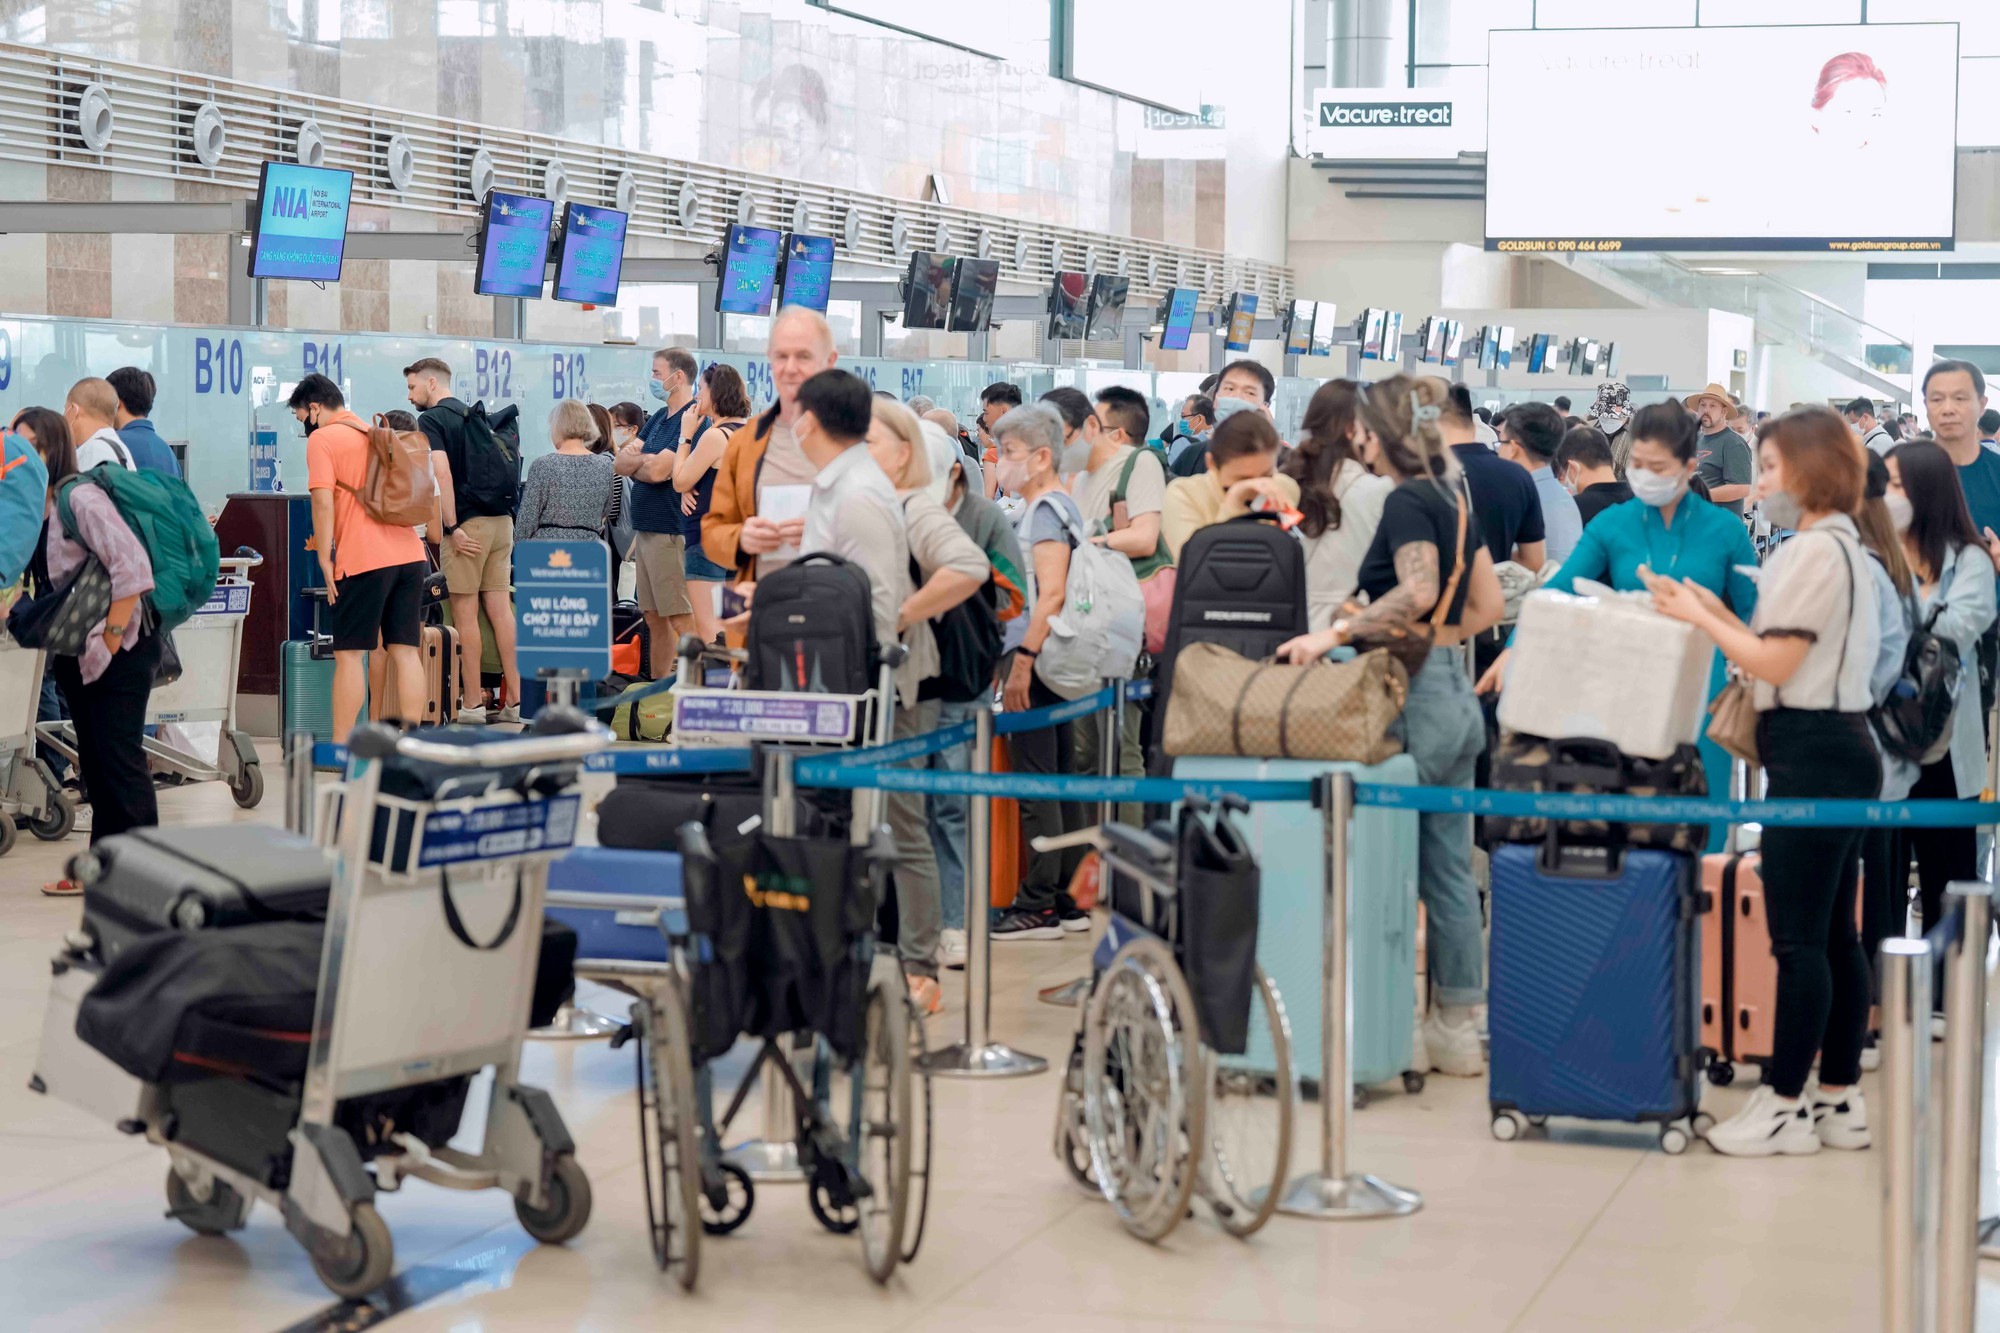 Chùm ảnh: Gần 80.000 khách qua Cảng hàng không Nội Bài ngày trước kỳ nghỉ lễ   - Ảnh 4.